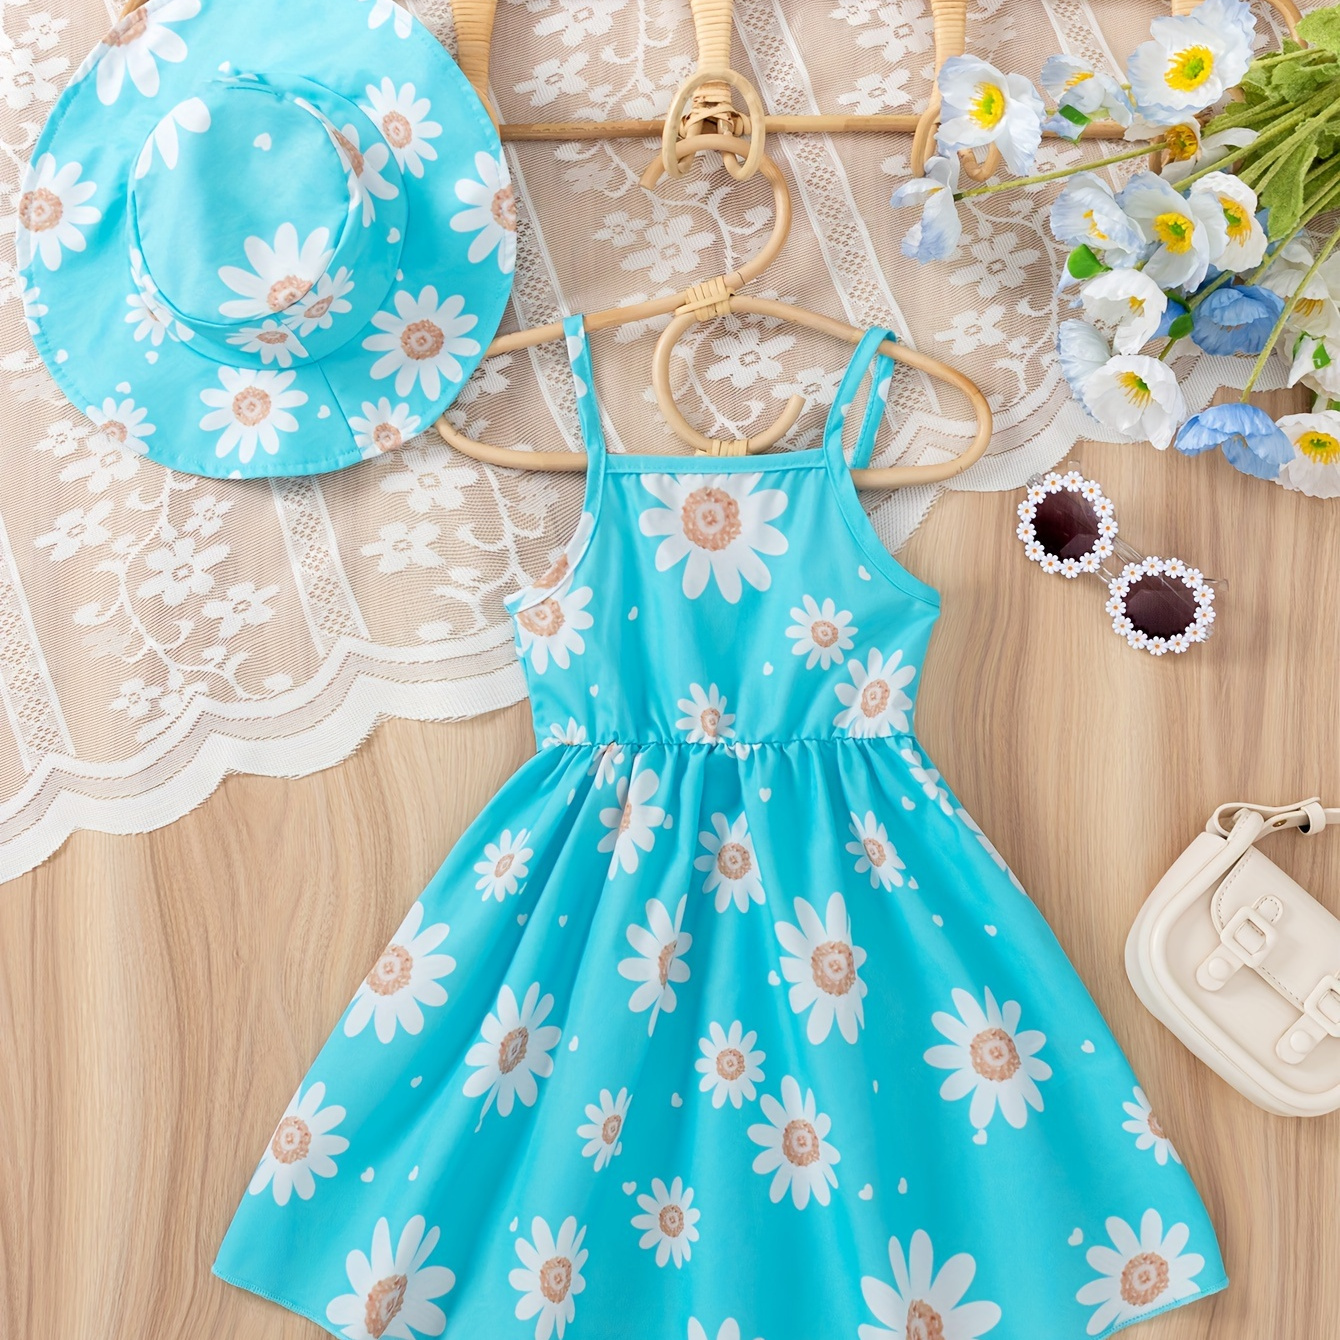 

Baby's Cartoon Flower Pattern Sleeveless Dress & Hat, Infant & Toddler Girl's Clothing For Summer/spring, As Gift